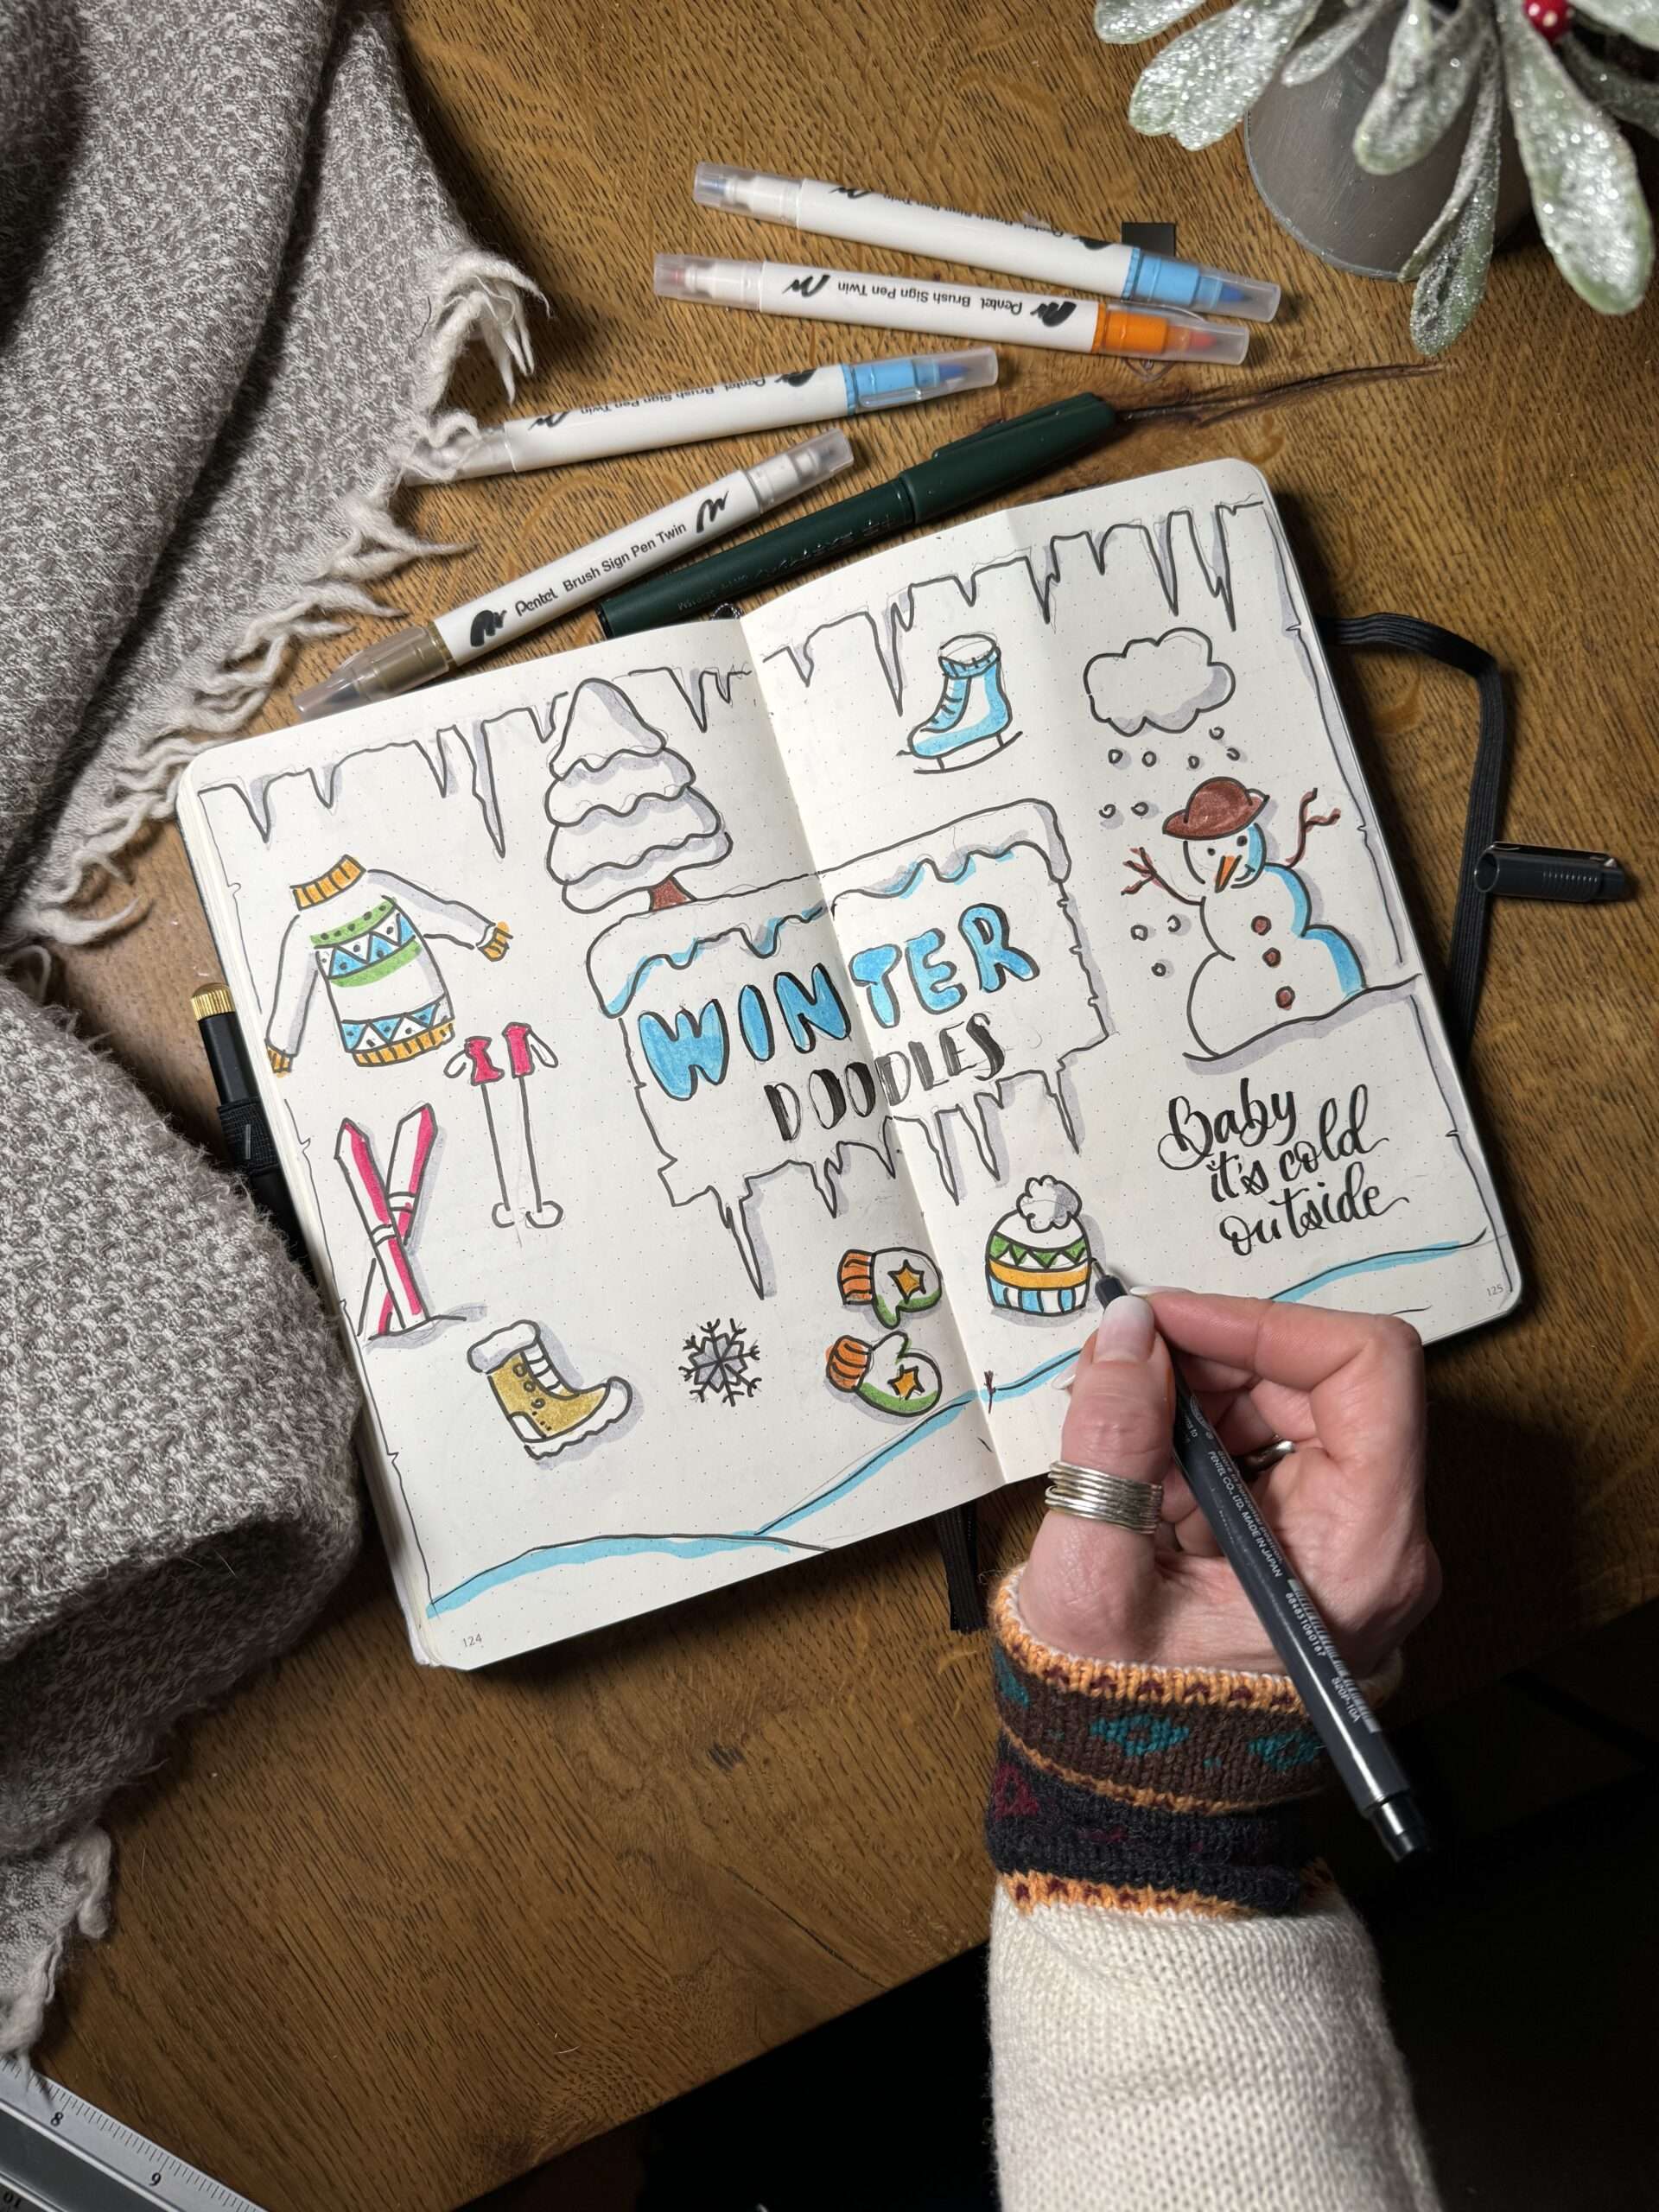 Winter Doodles und Sketchnotes für dein Bullet Journal